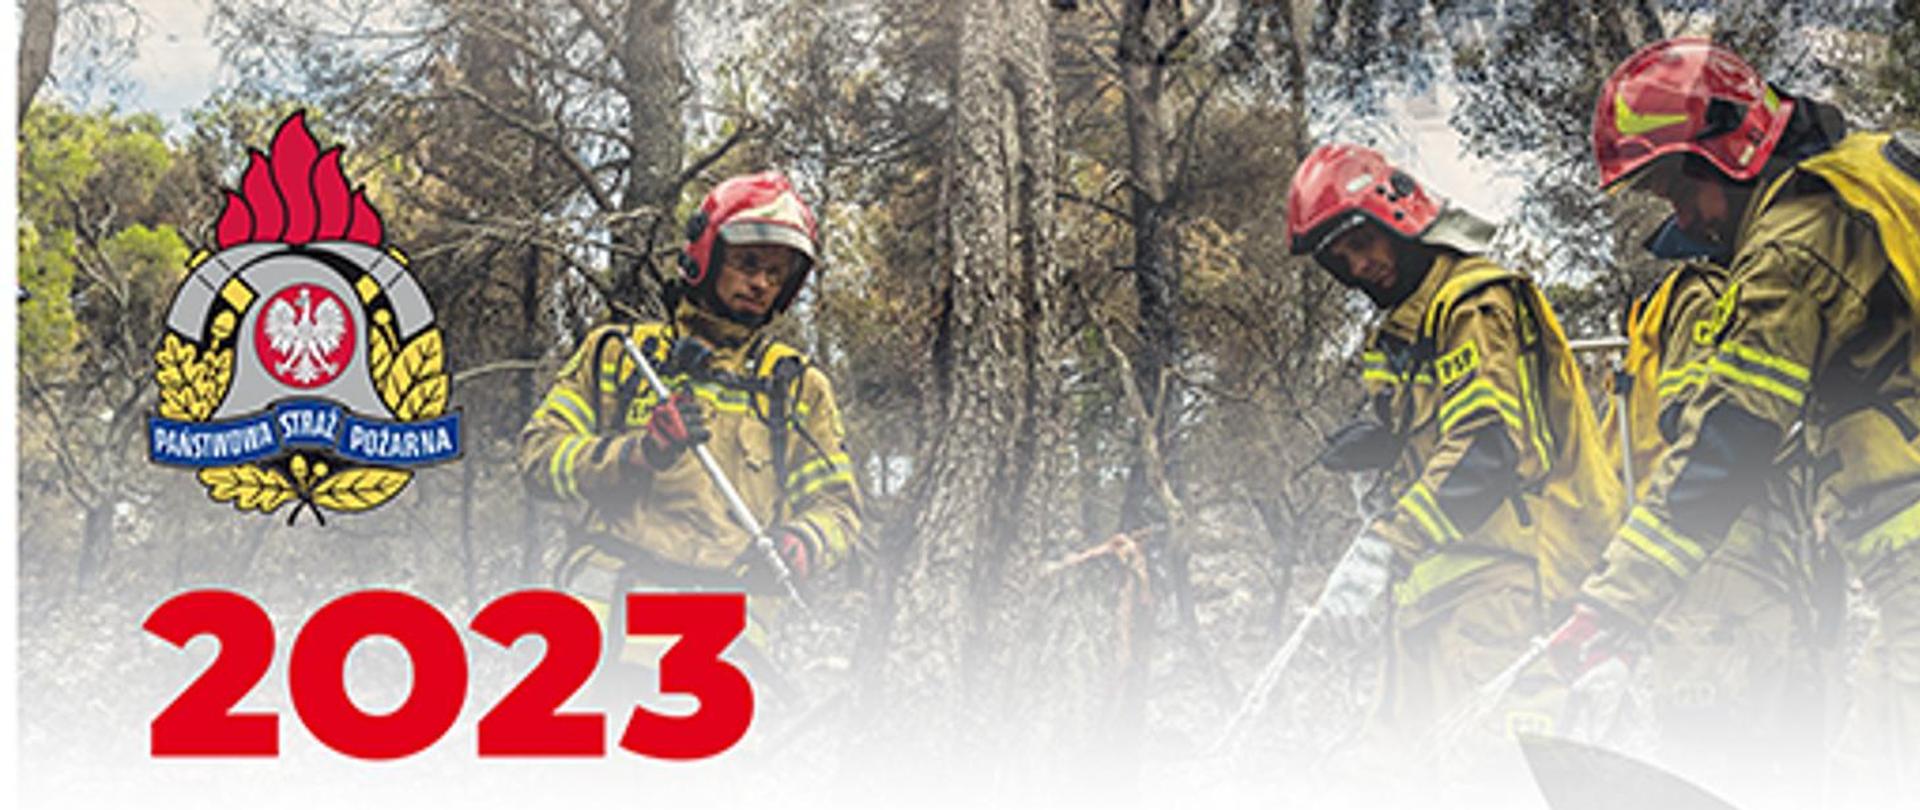 Zdjęcie okładki kalendarza na 2023r. Trzech strażaków gasi pożar trawy.